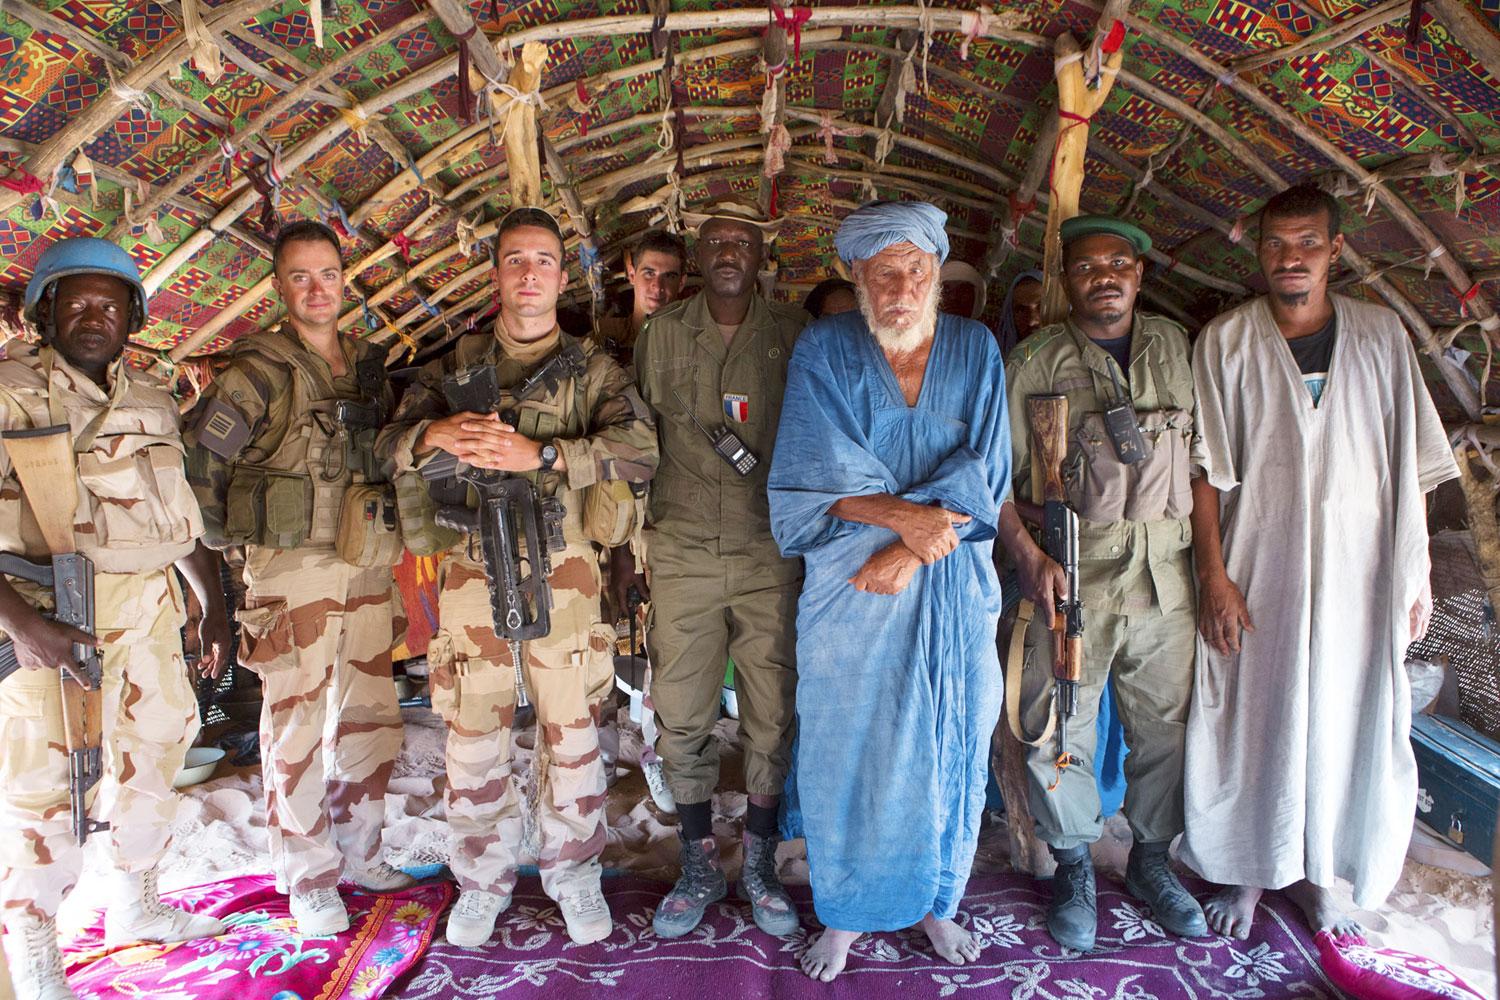 Francia katonák egy mali törzsi vezető társaságában. Az iszlamisták ellen is harcolnak